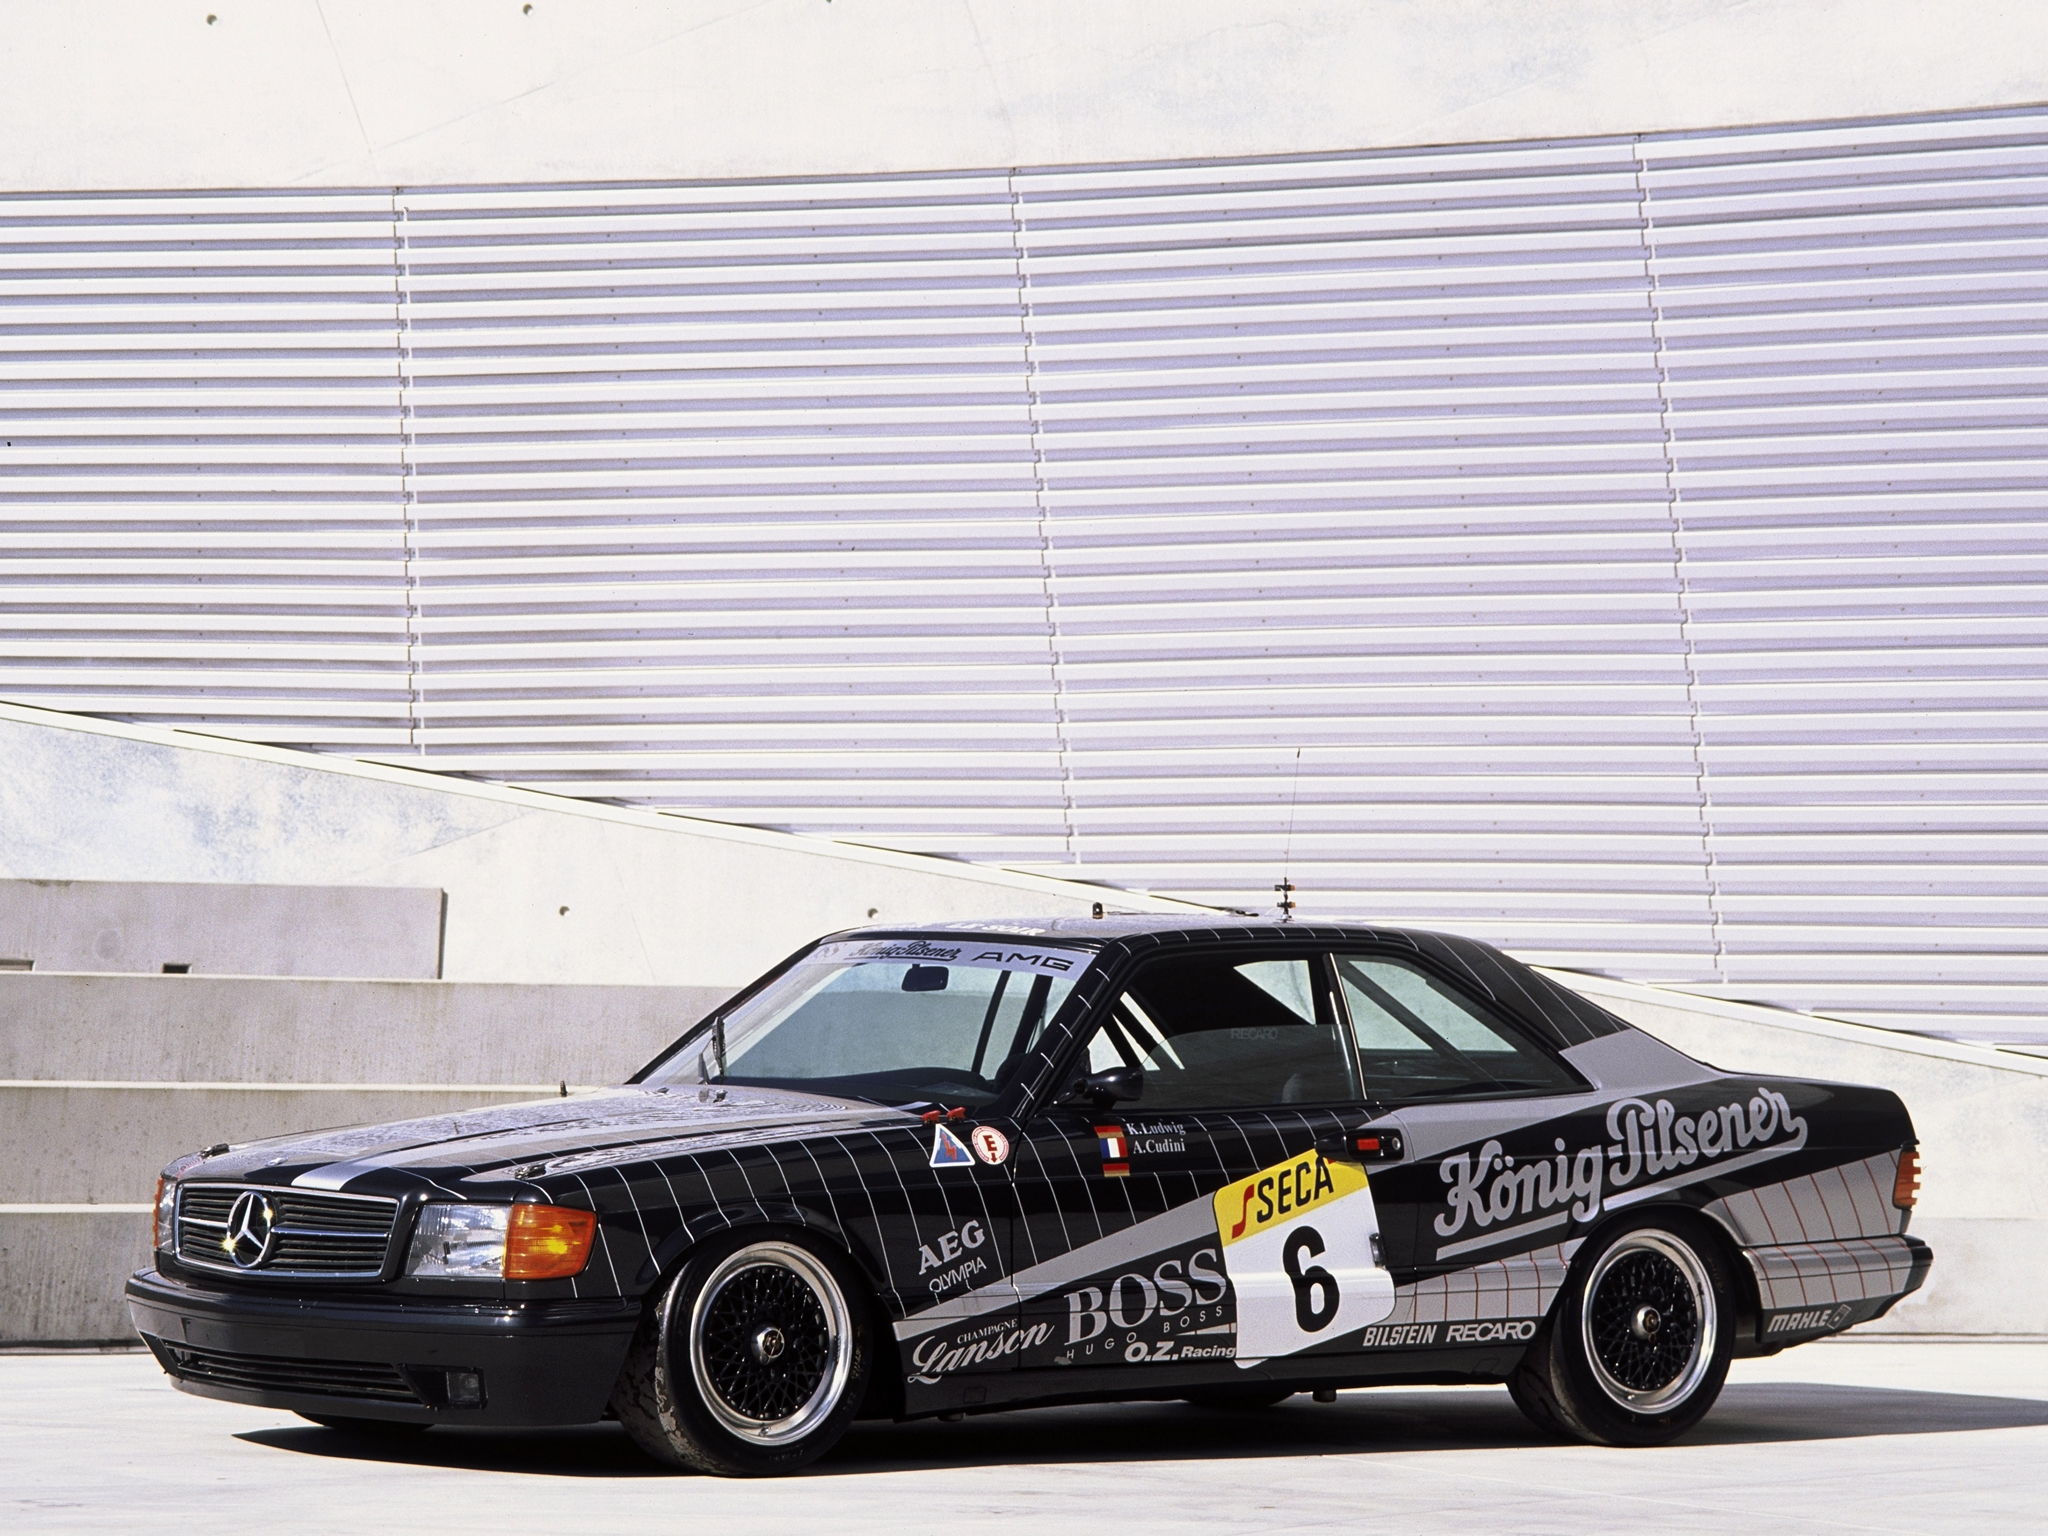 1989, Mercedes, Benz, Amg, 500, Sec, Rc126, Race, Racing Wallpaper